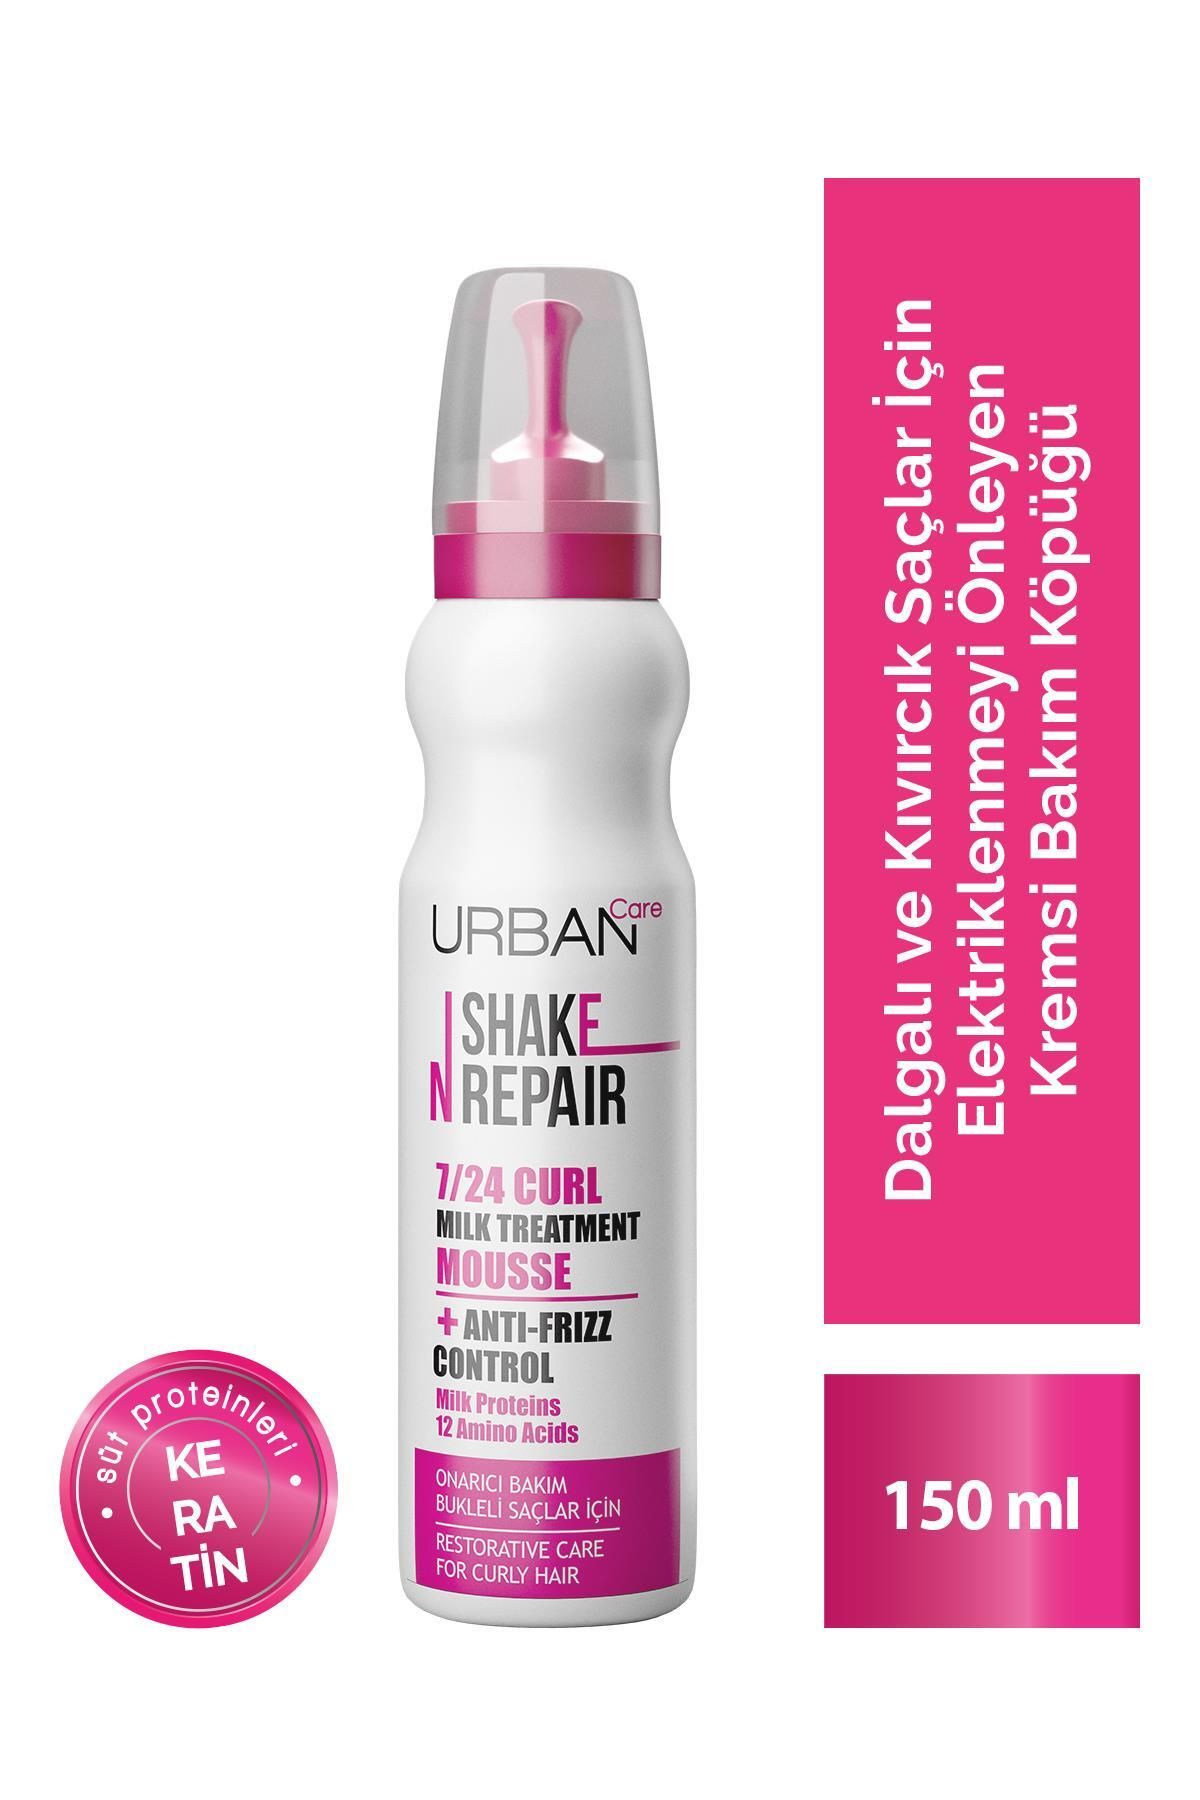 Urban Care Shake N Repair 7/24 Bukleli Saçlar Için Onarıcı Bakım Köpüğü - 150 ml